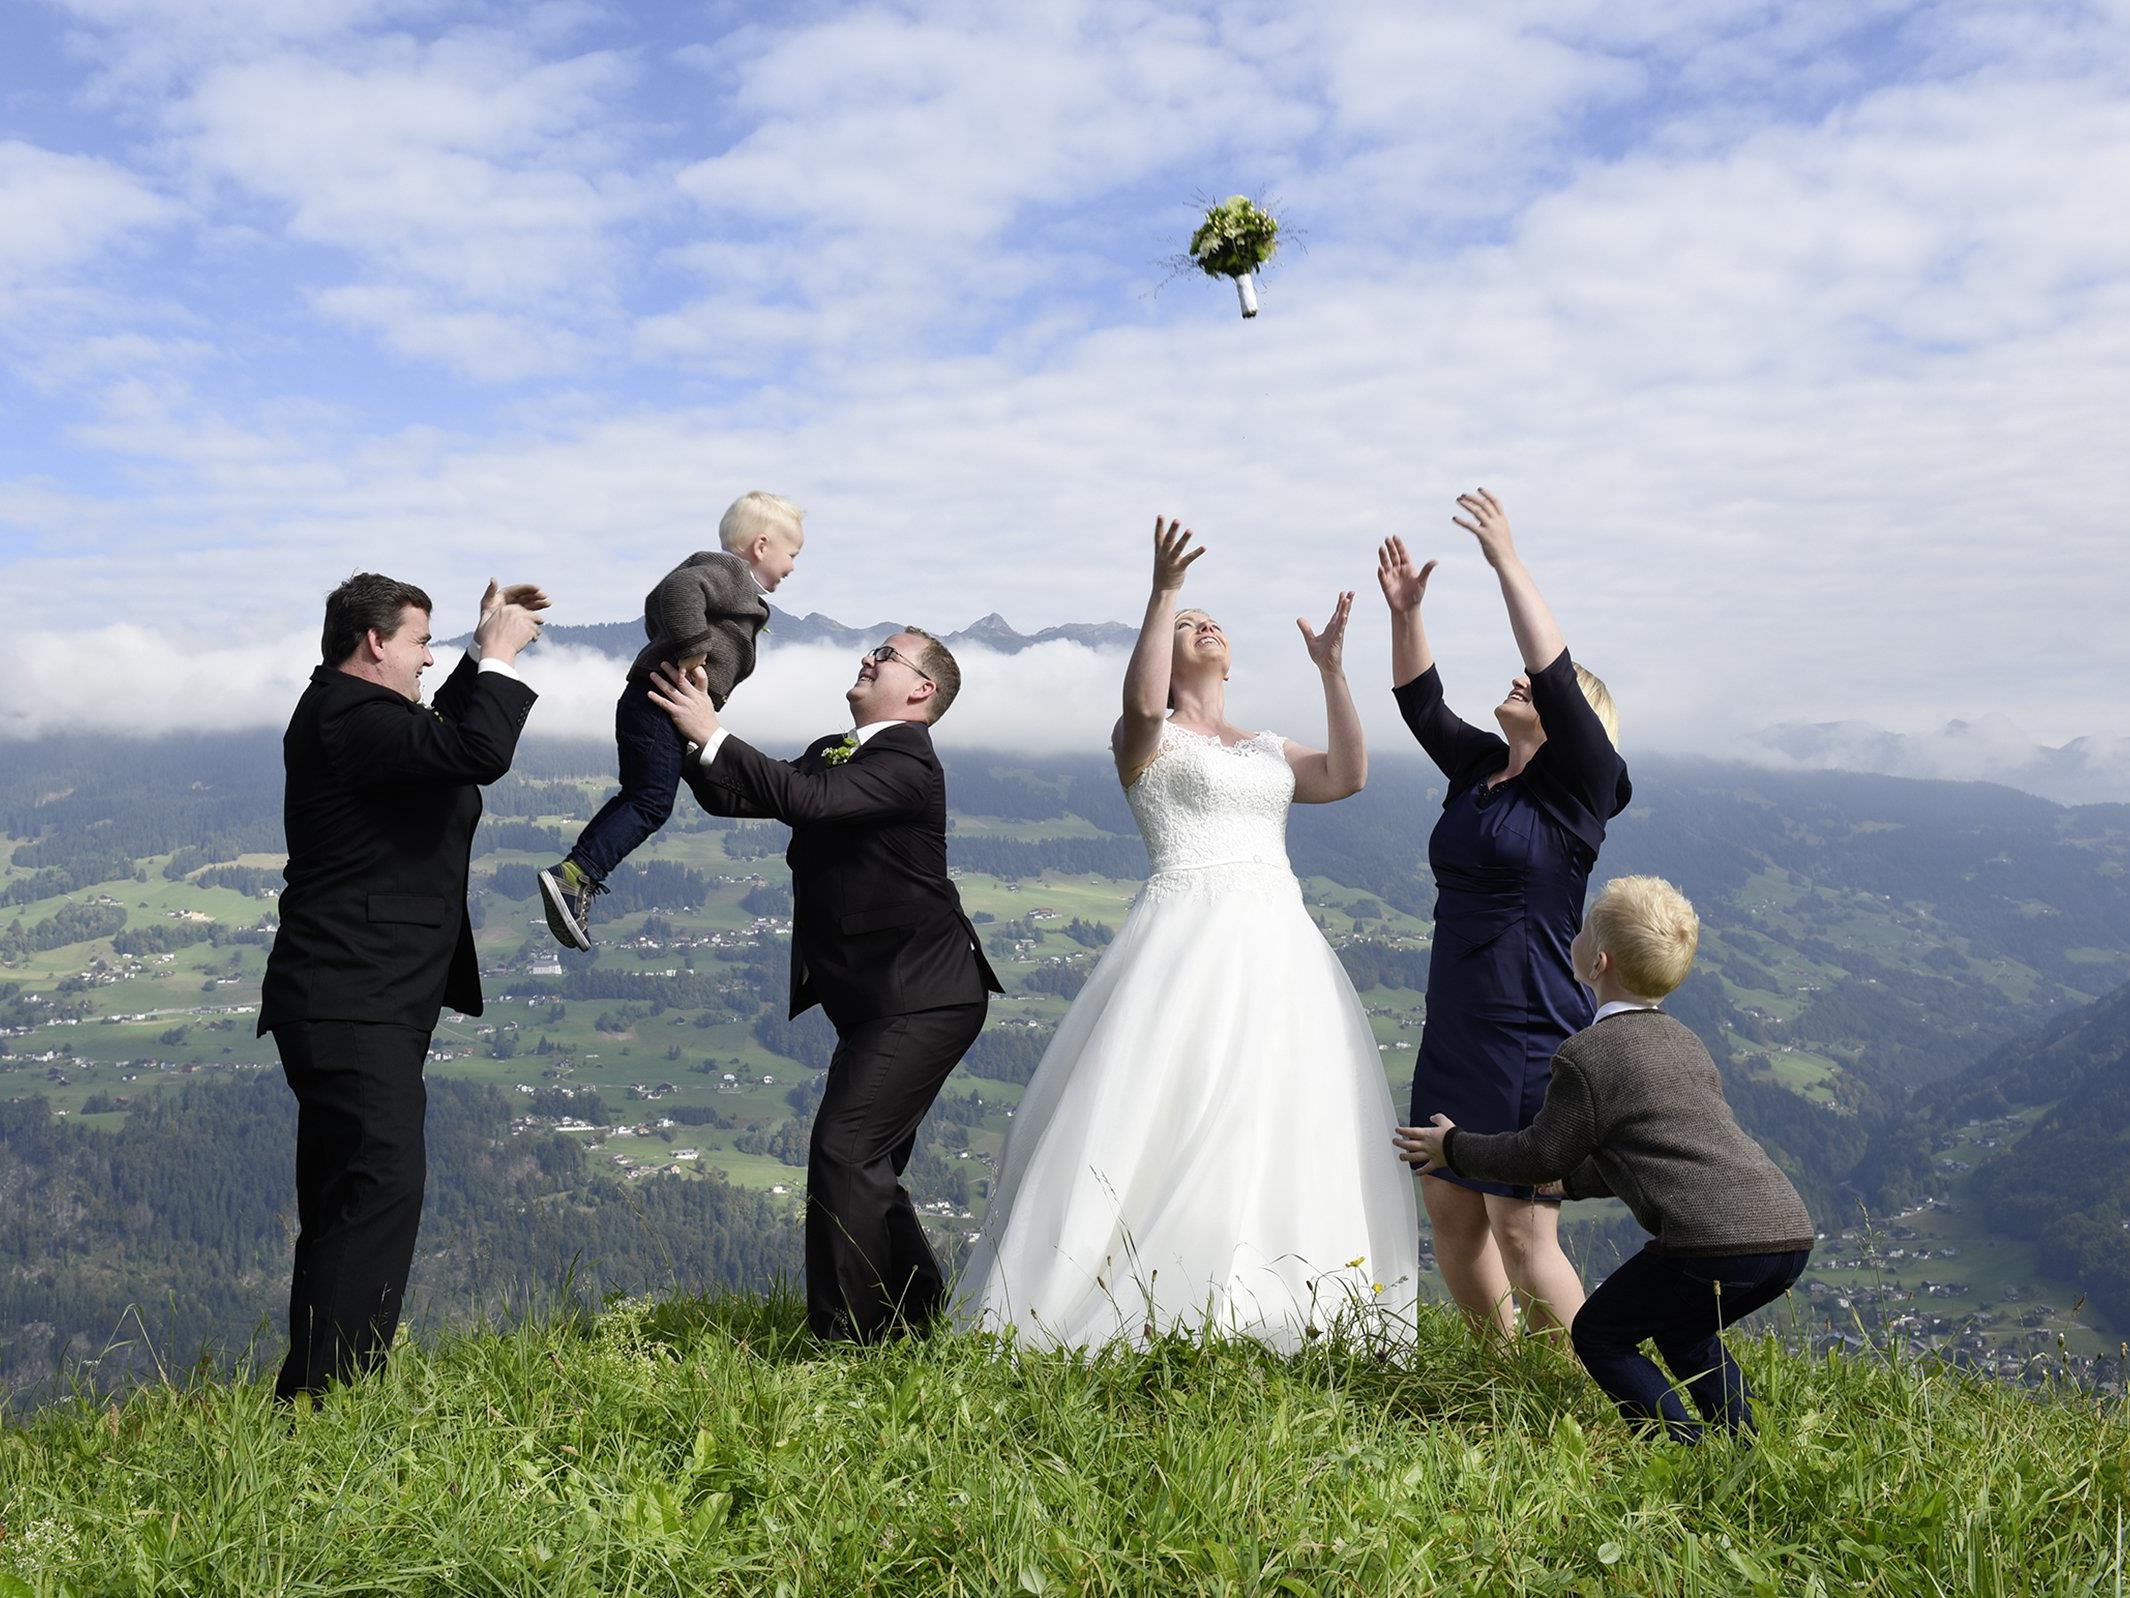 Das Brautpaar mit Kindern und Trauzeugen posiert für den Fotografen.